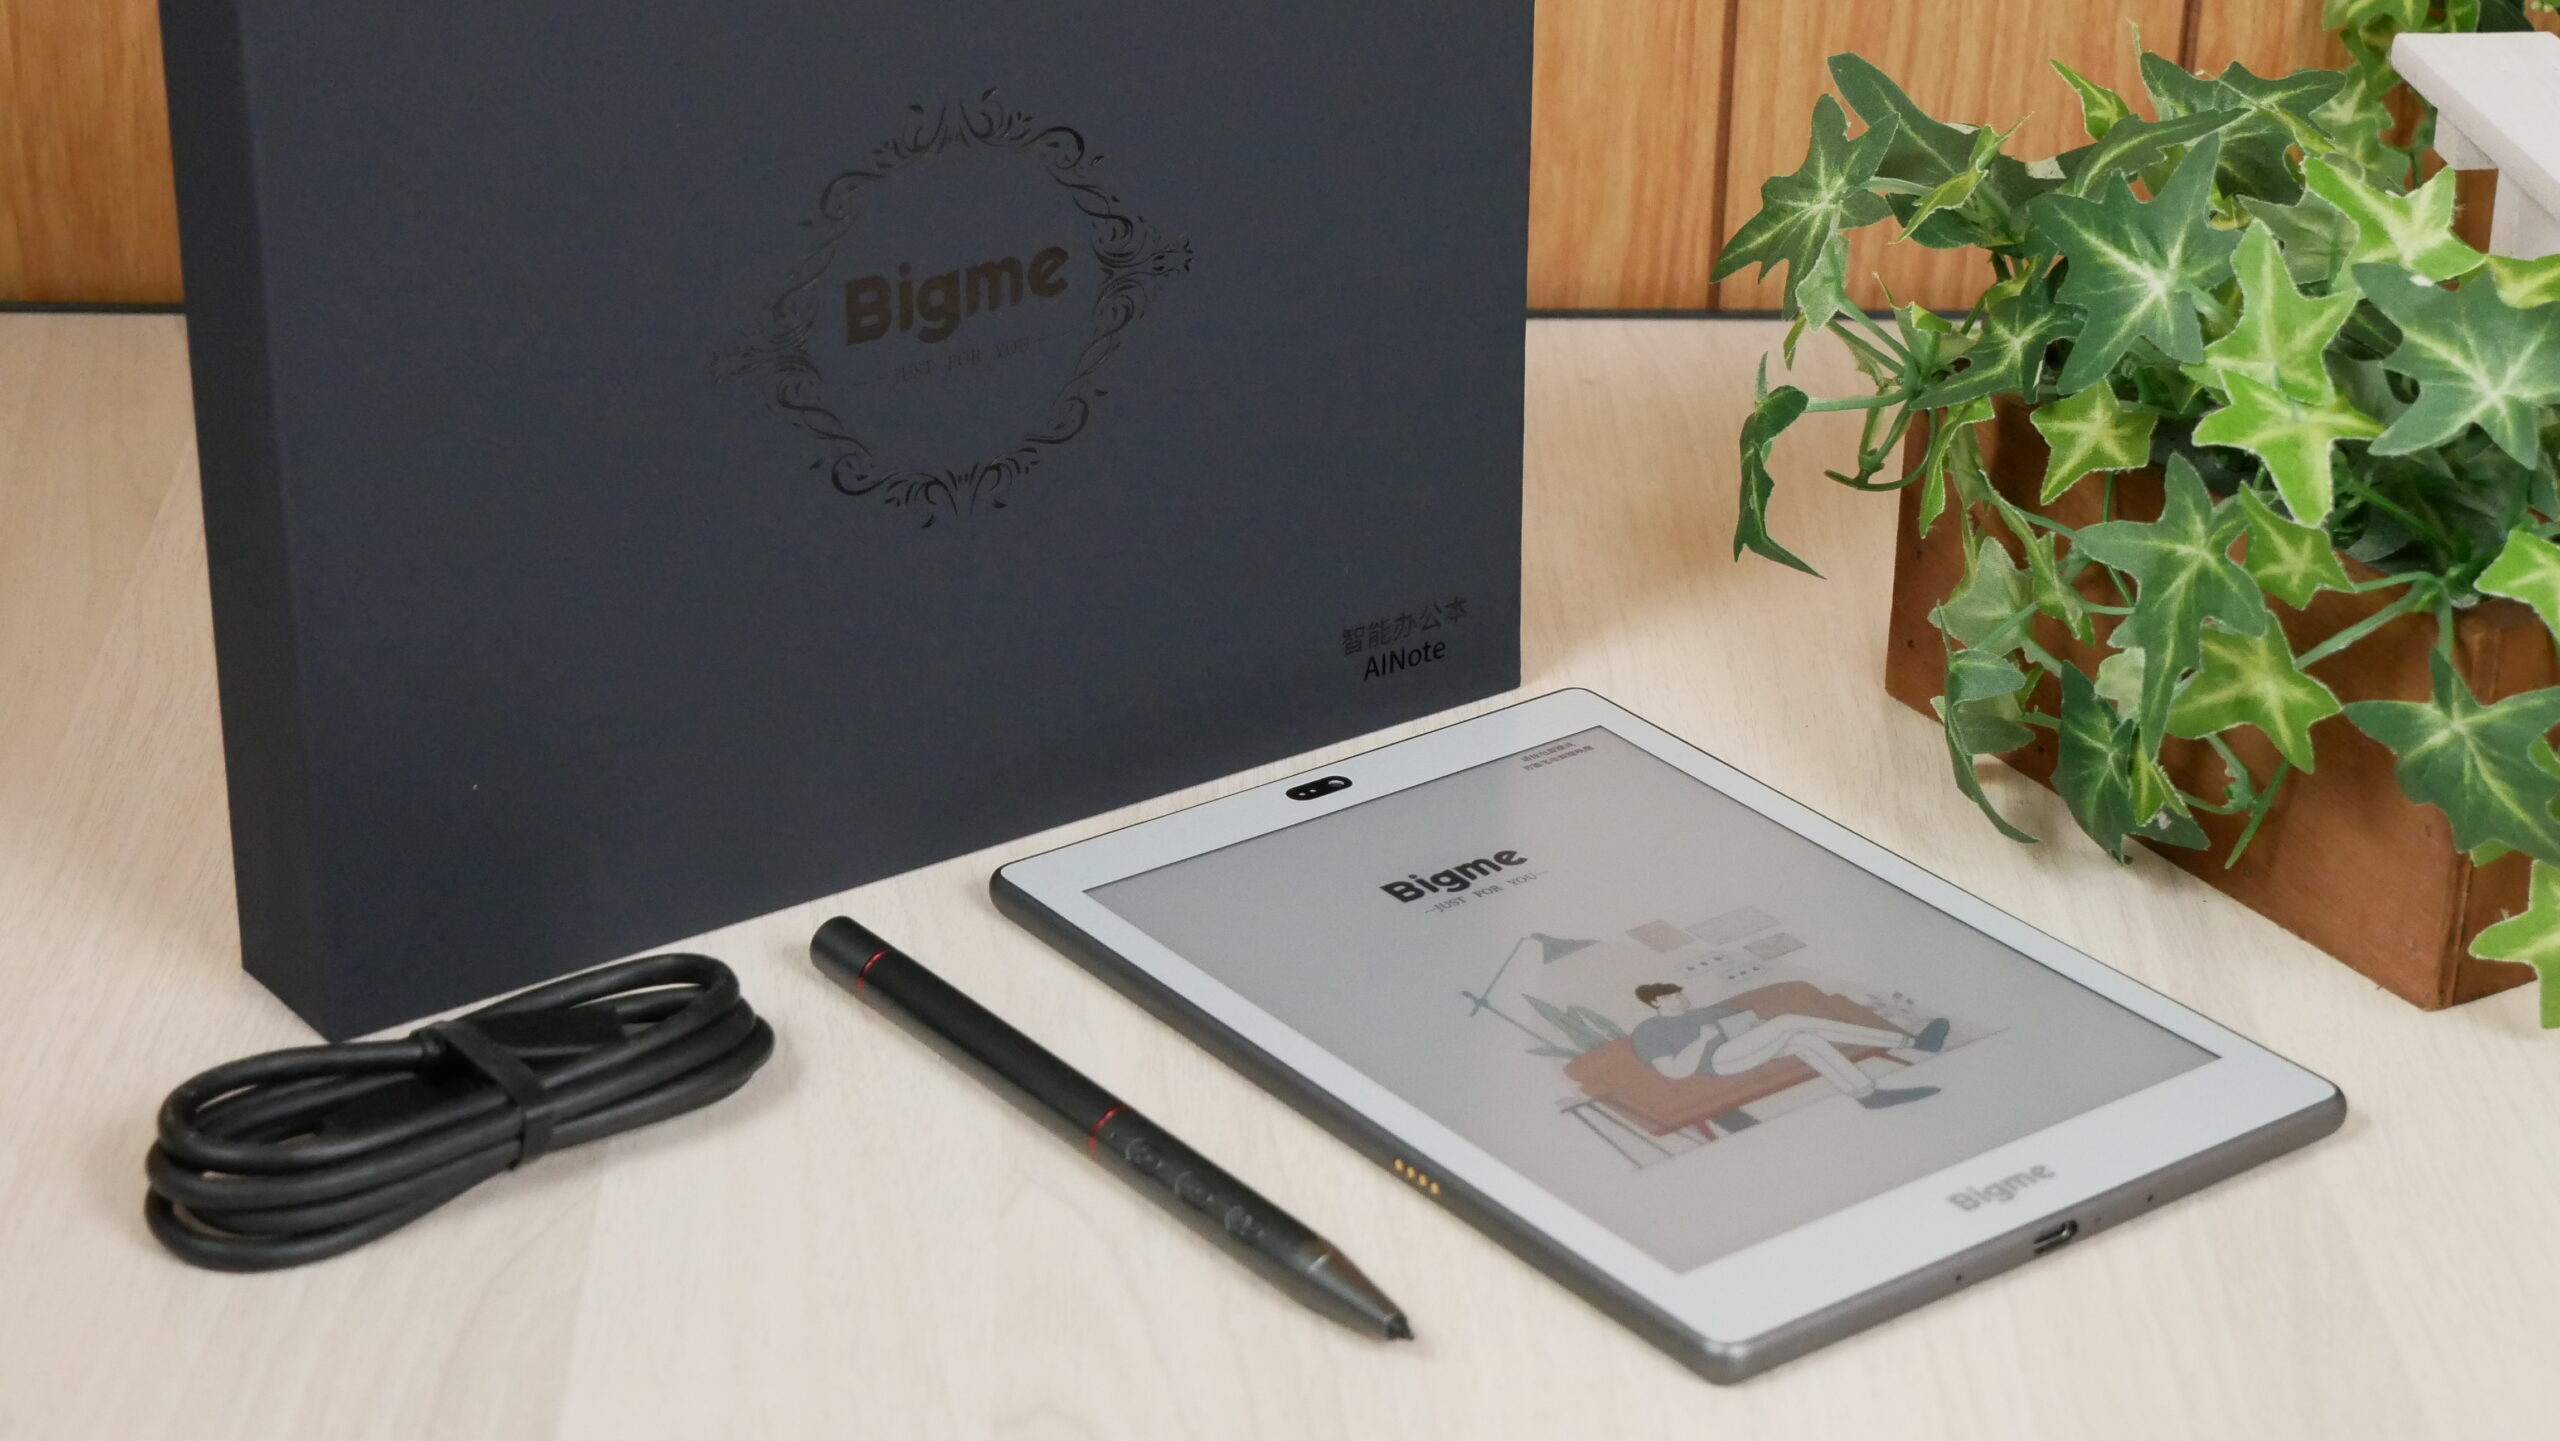 Bigme S6: E-book met kleuren E-Ink scherm en ingebouwde ChatGPT voor 500 dollar